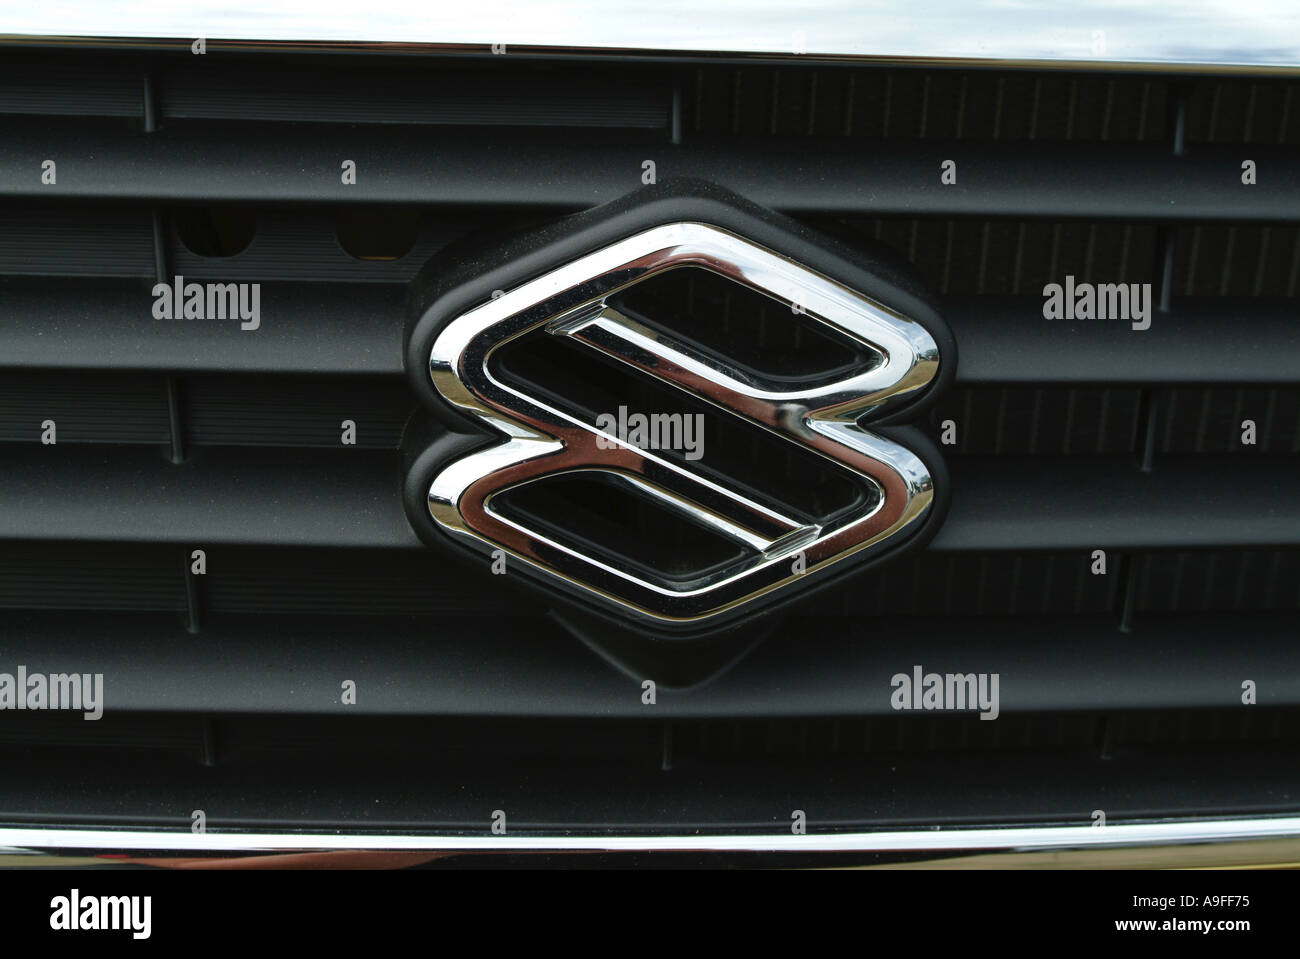 https://c8.alamy.com/compfr/a9ff75/constructeur-automobile-suzuki-japon-manufacturel-logo-badge-bonnet-chrome-a9ff75.jpg